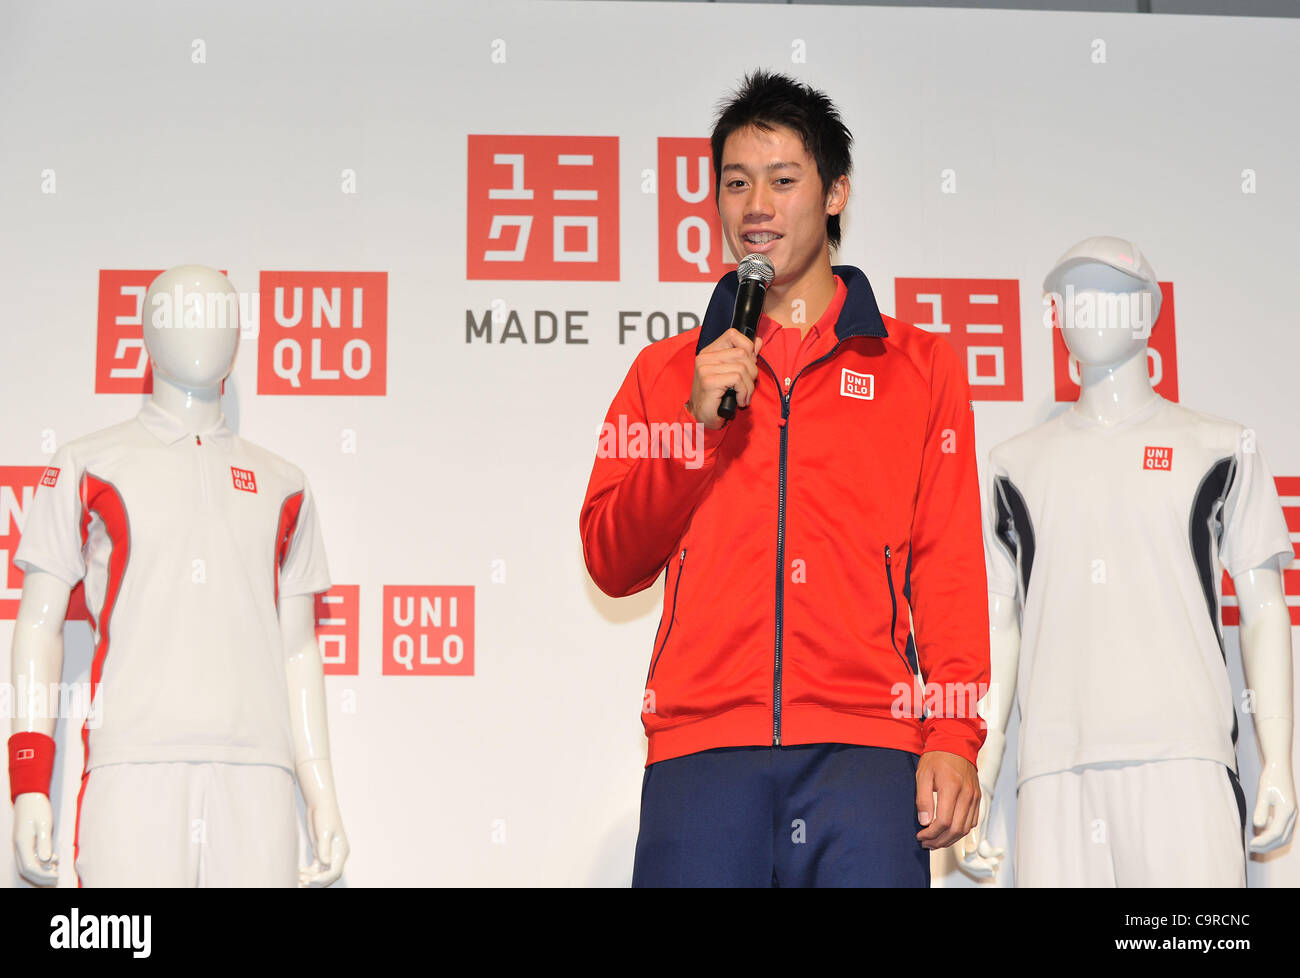 Kei Nishikori, 13 février 2012 - Tennis : conférence de presse pour "UNIQLO"  à Roppongi Tokyo, Japon. La marque japonaise Uniqlo lance une gamme de  vêtements de tennis en avril après le